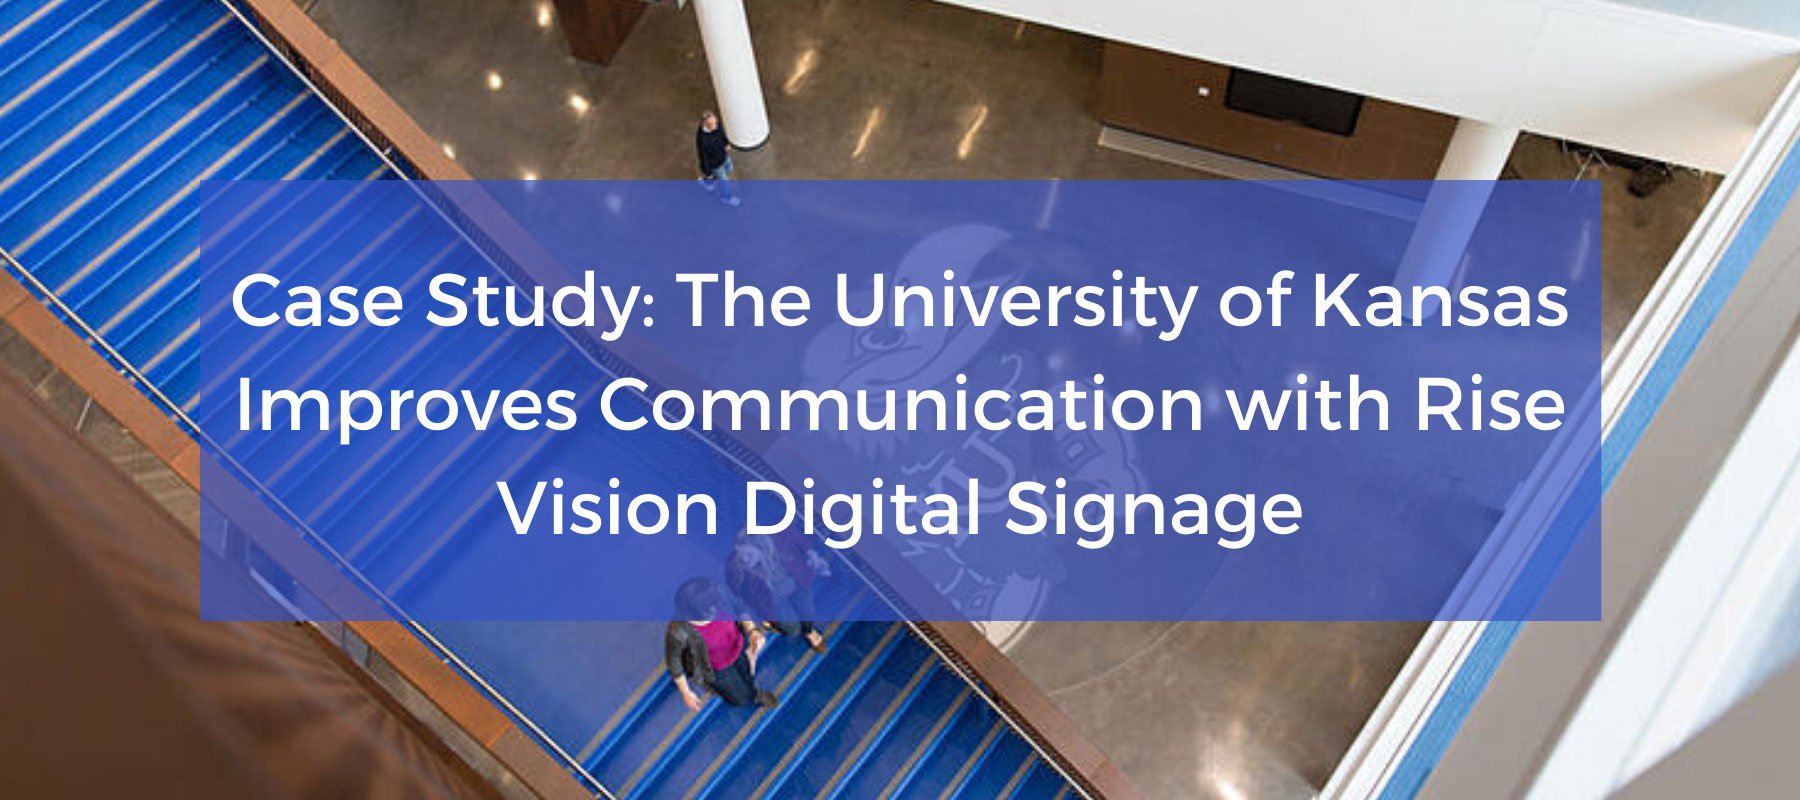 The University of Kansas Improves Communication with Rise Vision Digital Signage